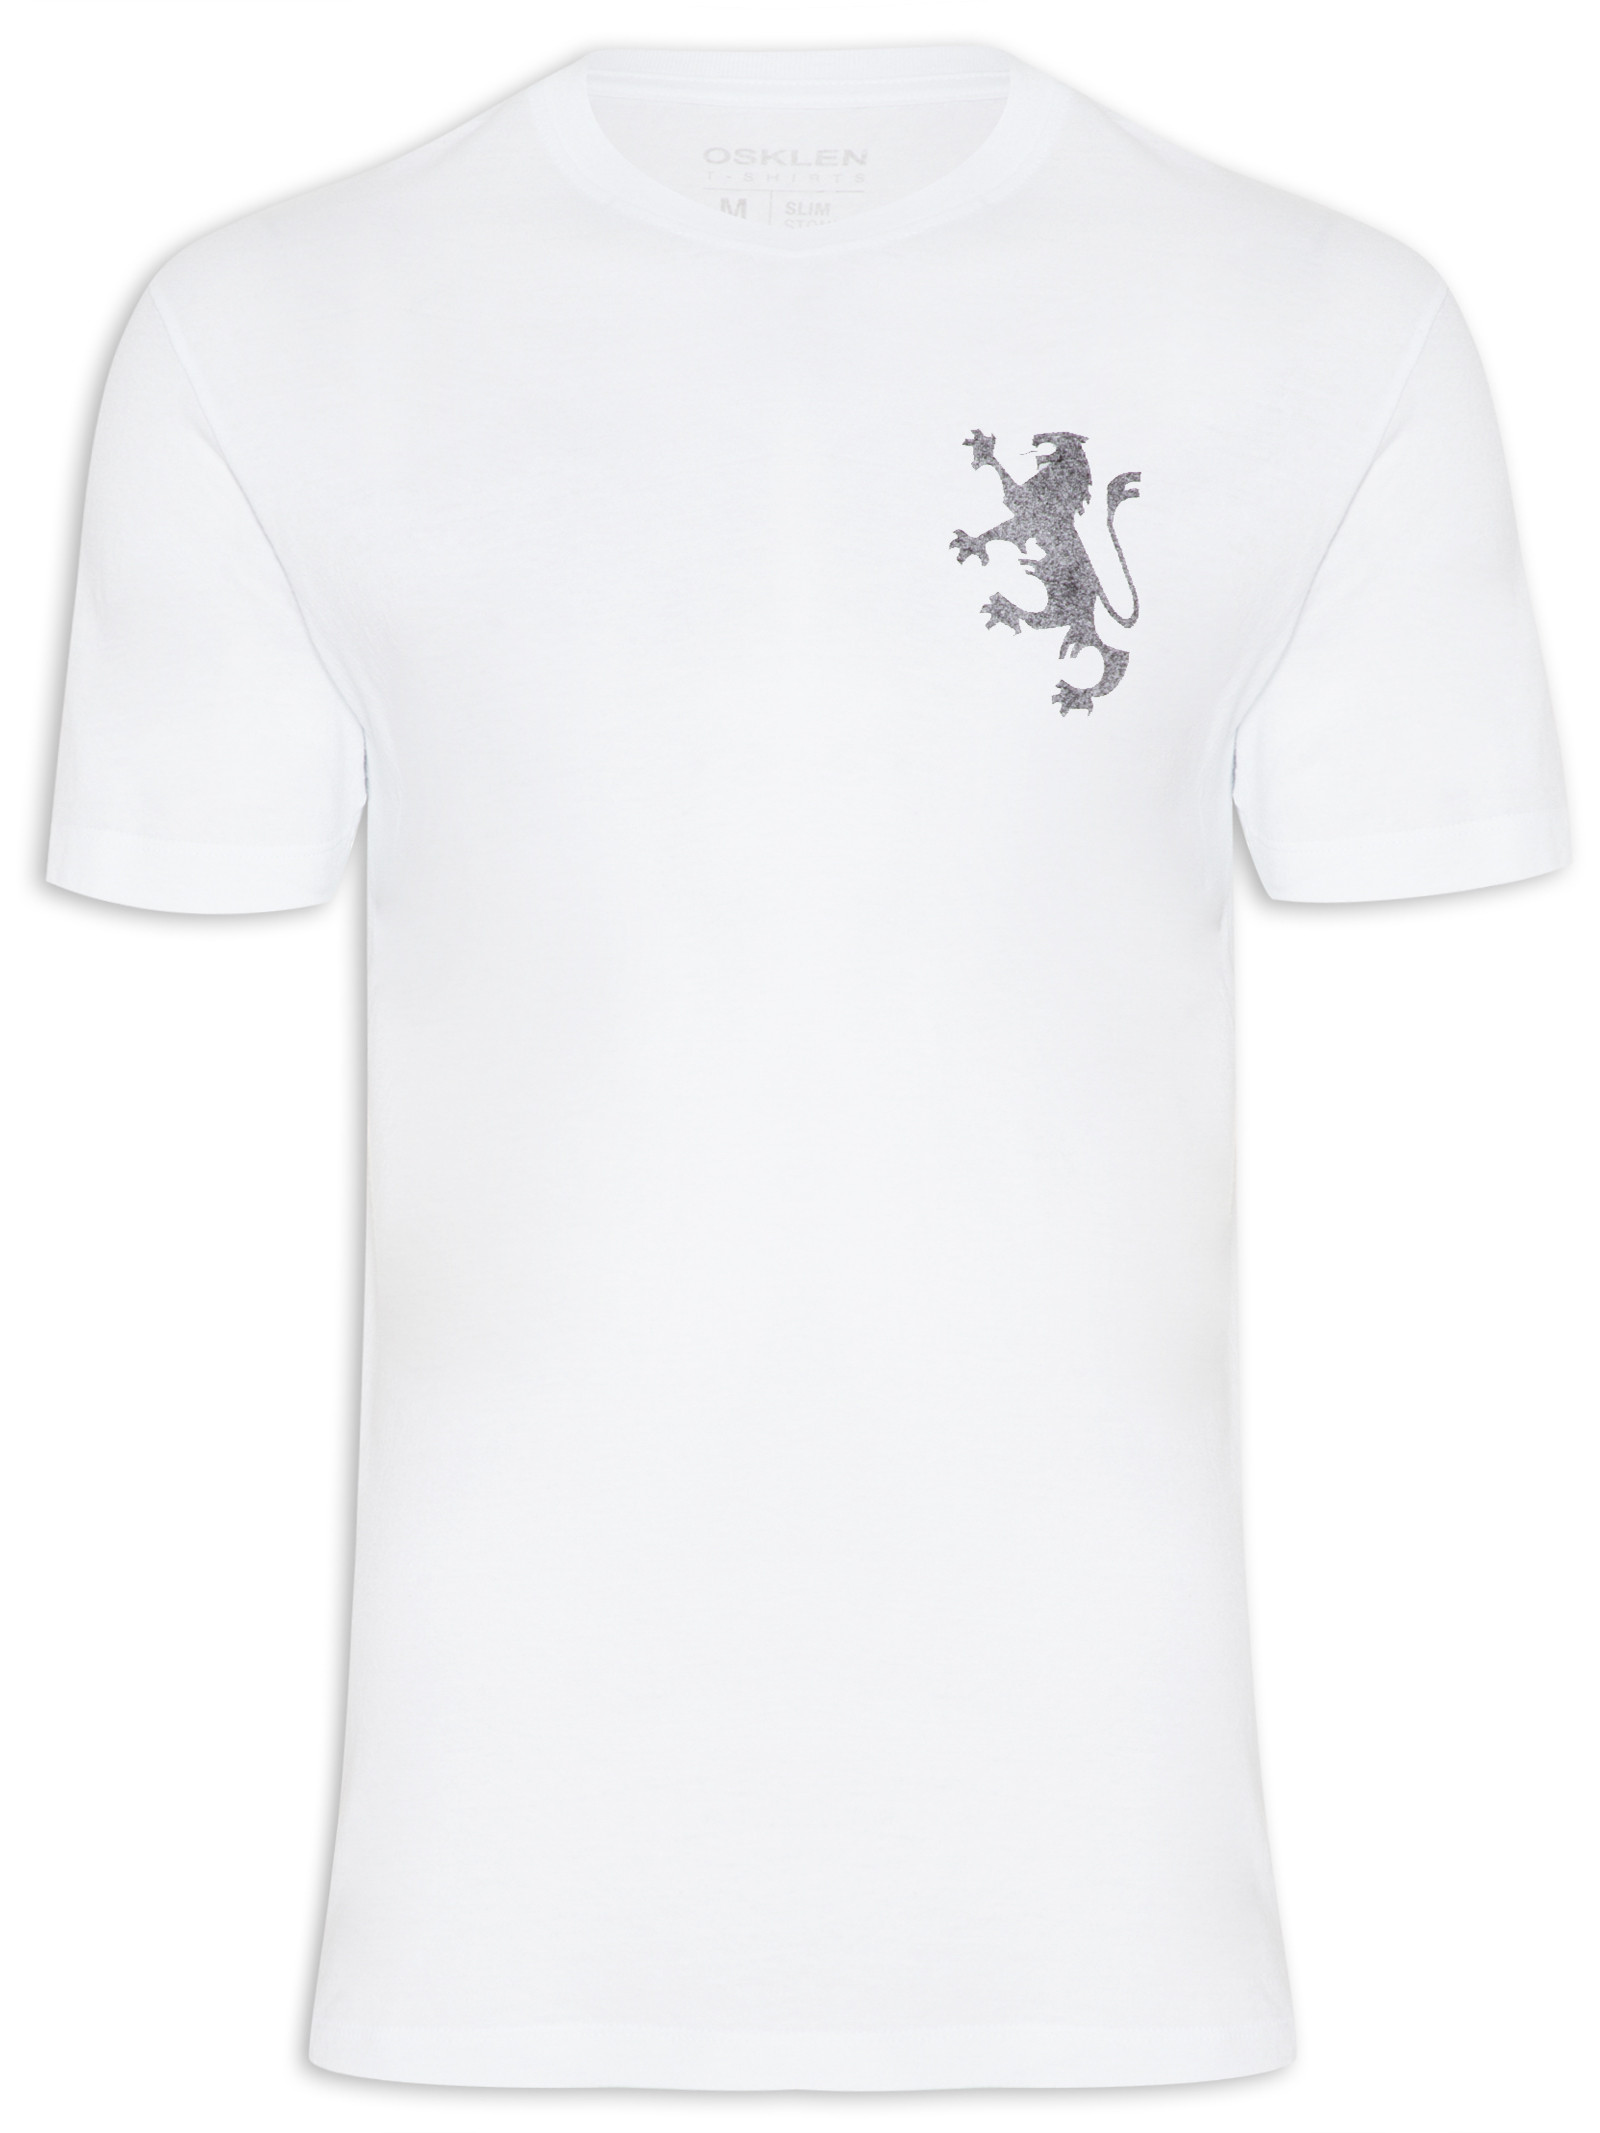 Lion T-shirt Designs - 59+ Lion T-shirt Ideas in 2023 | 99designs